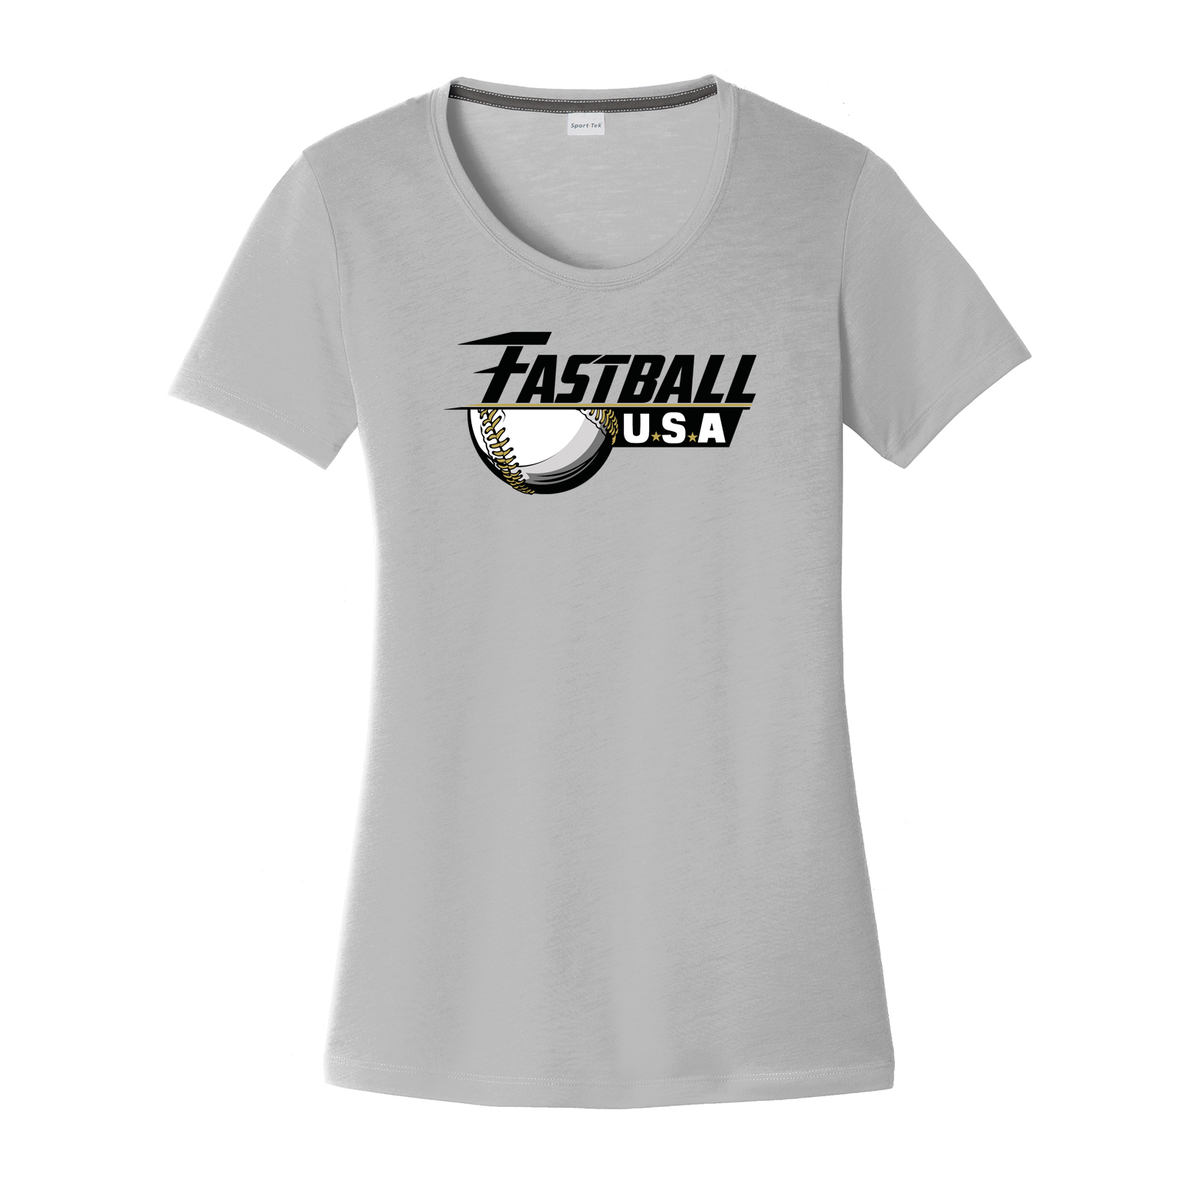 Team Fastball Baseball Women's CottonTouch Performance T-Shirt